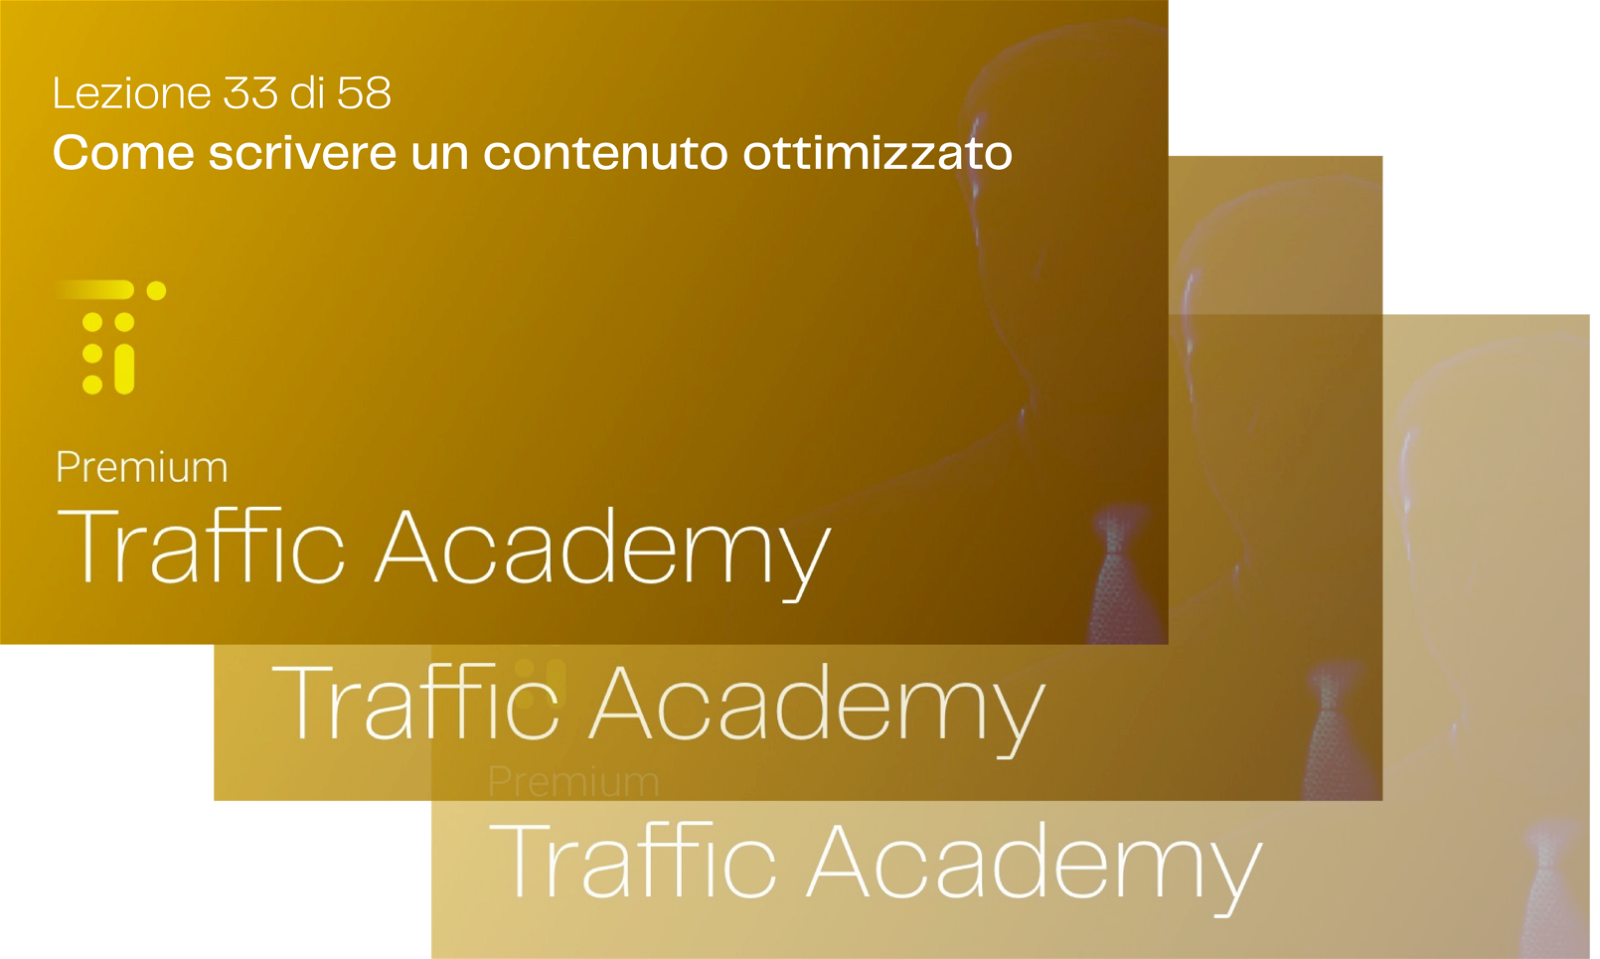 Traffic Academy 2